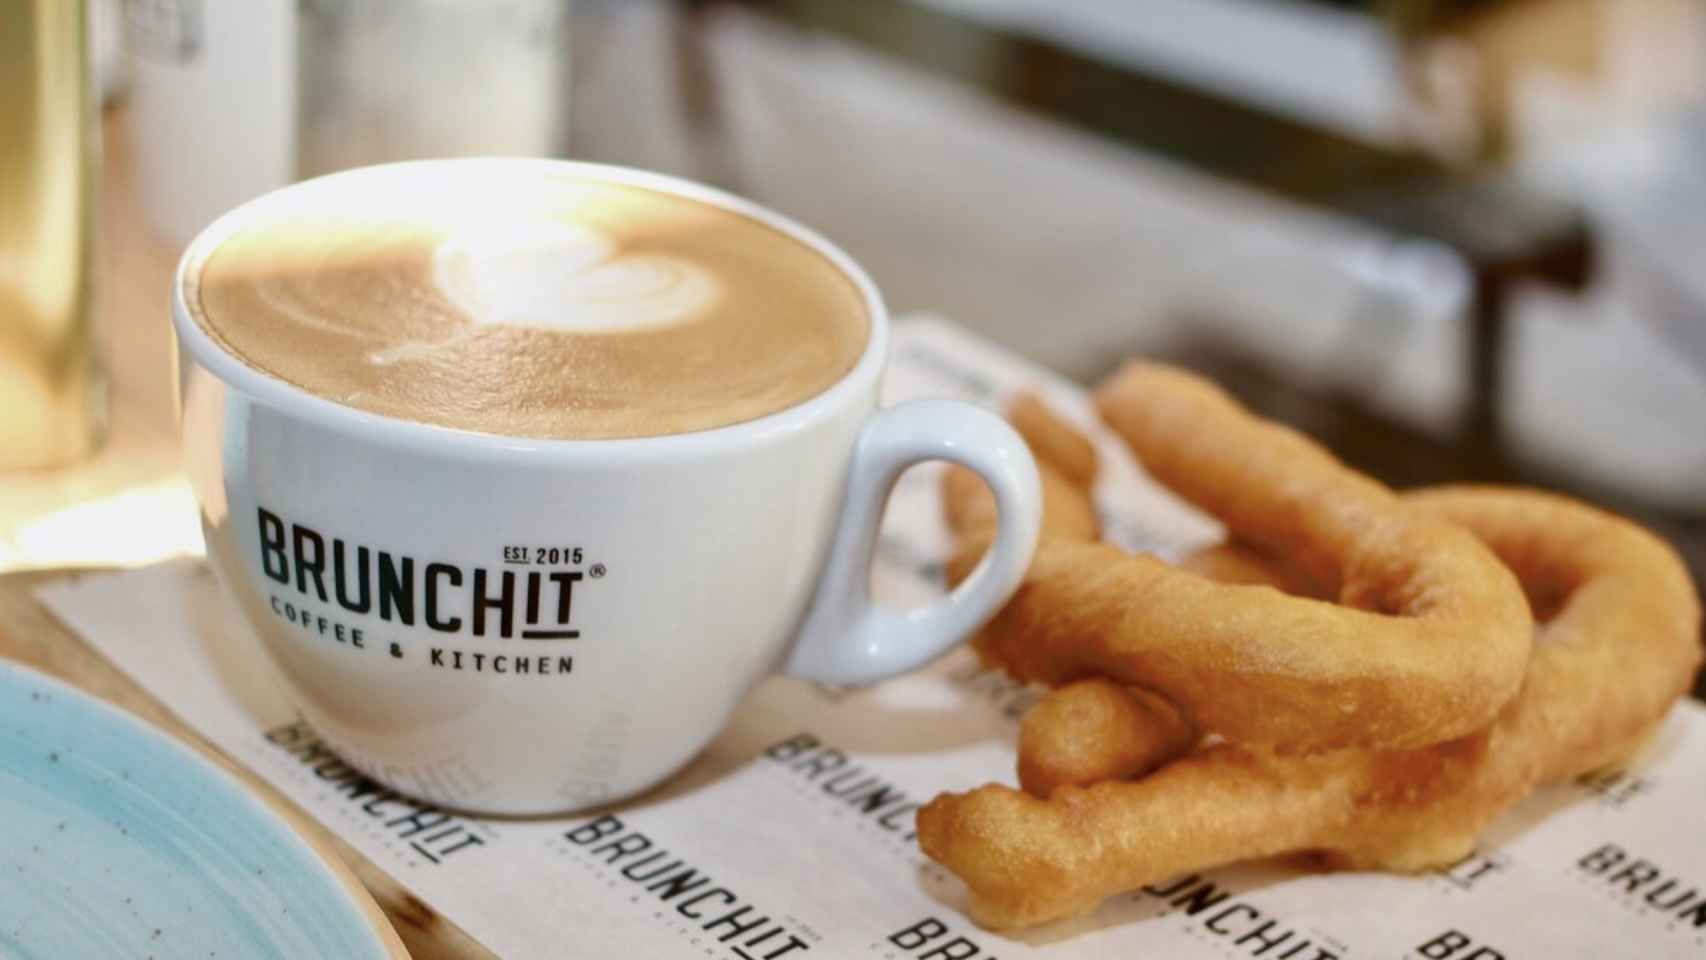 Brunchit. Coffee & Kitchen